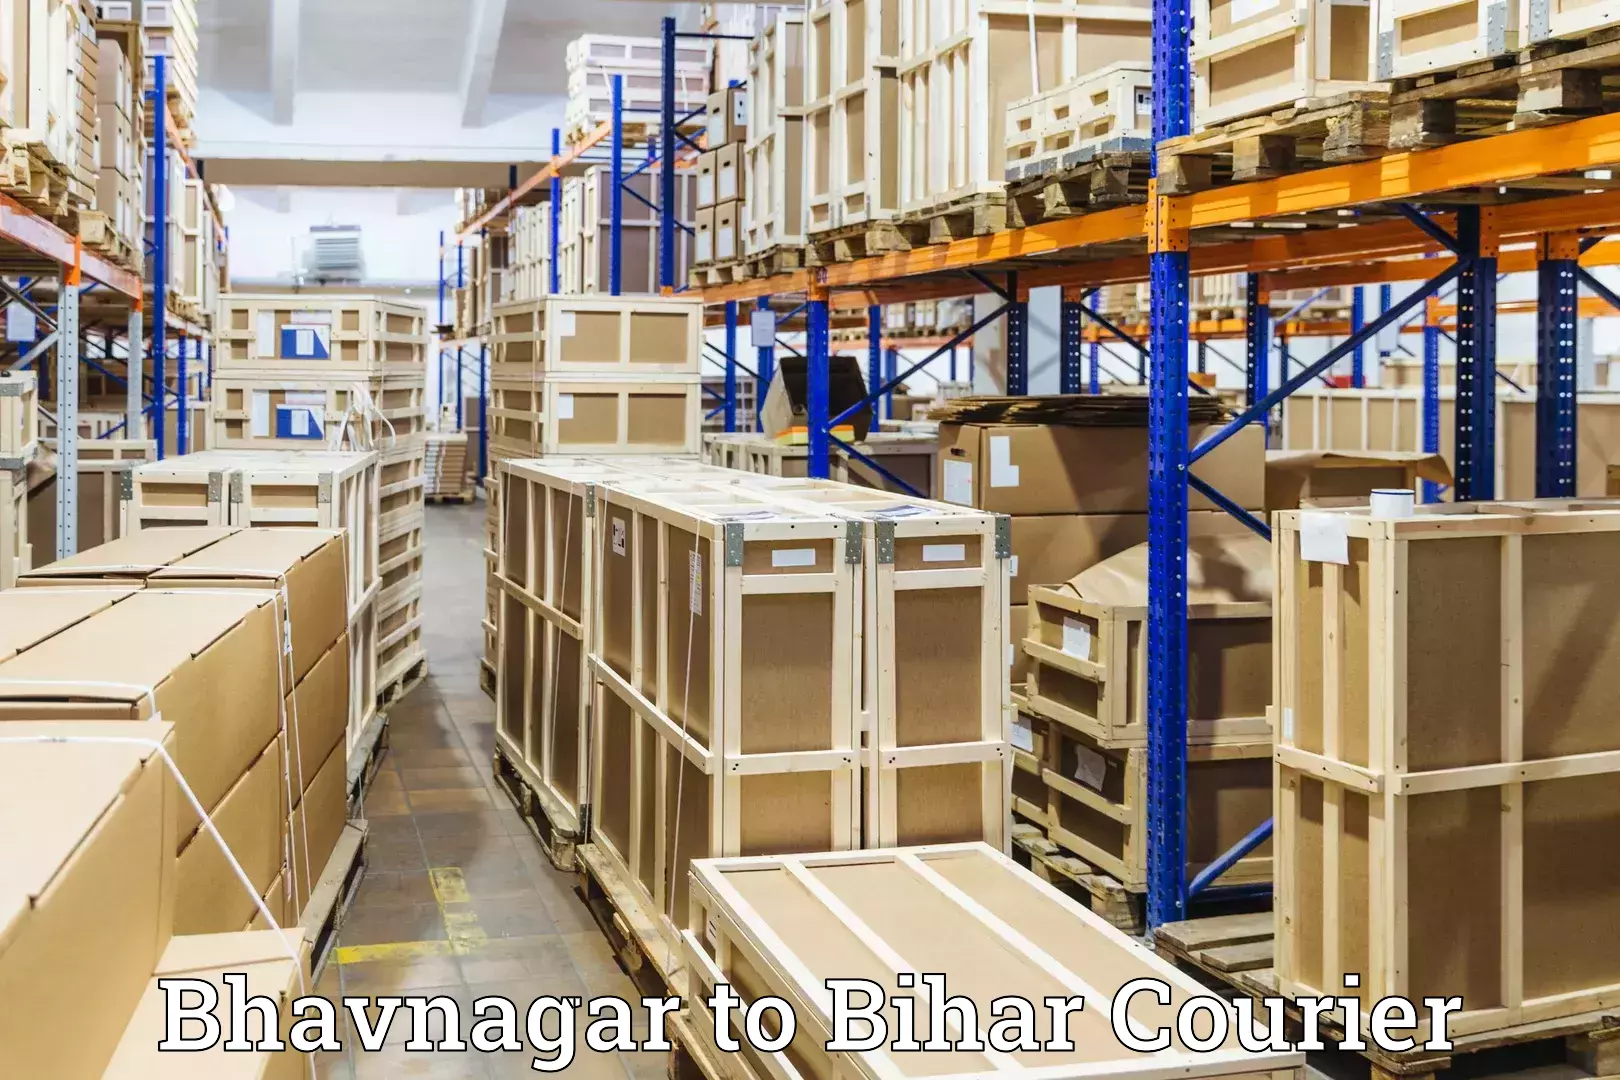 Baggage delivery technology in Bhavnagar to Bikramganj